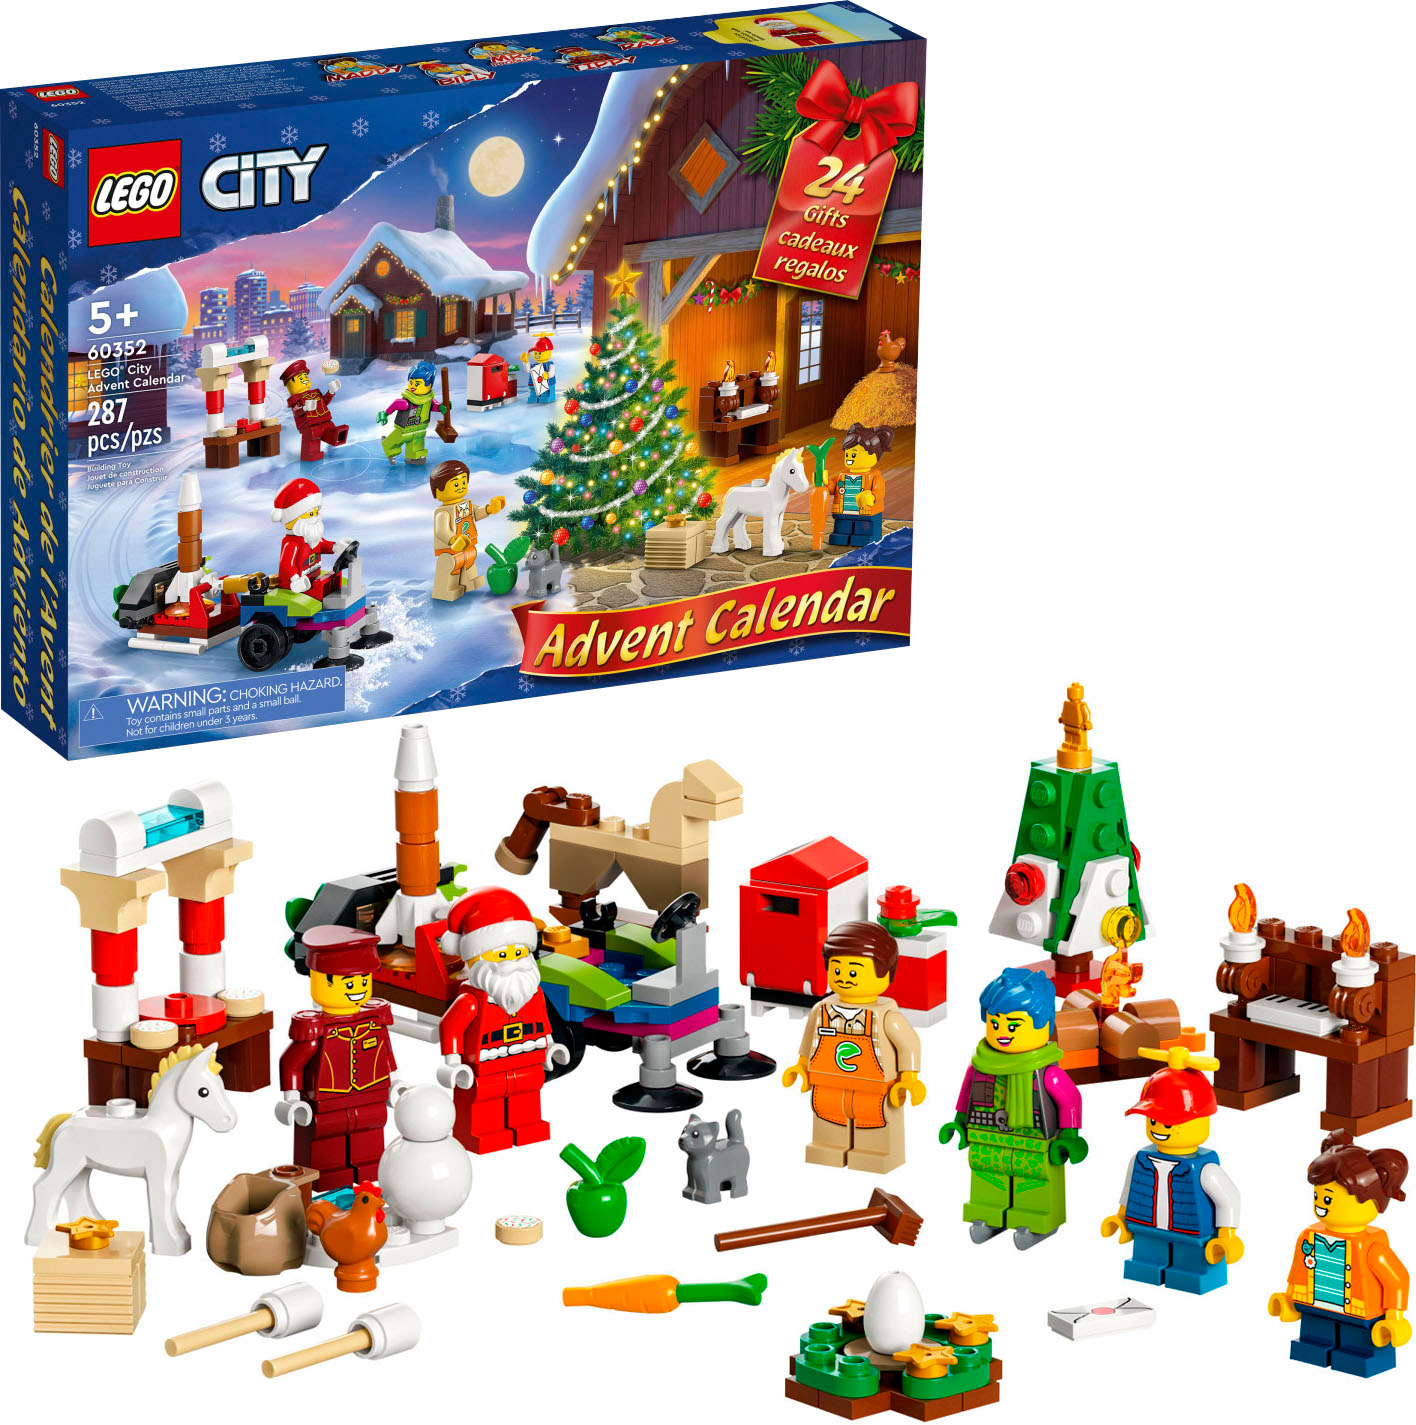 Kiks otte cowboy LEGO City Advent Calendar Toy Building Kit 60352 (287 Pieces) 6379687 -  Best Buy